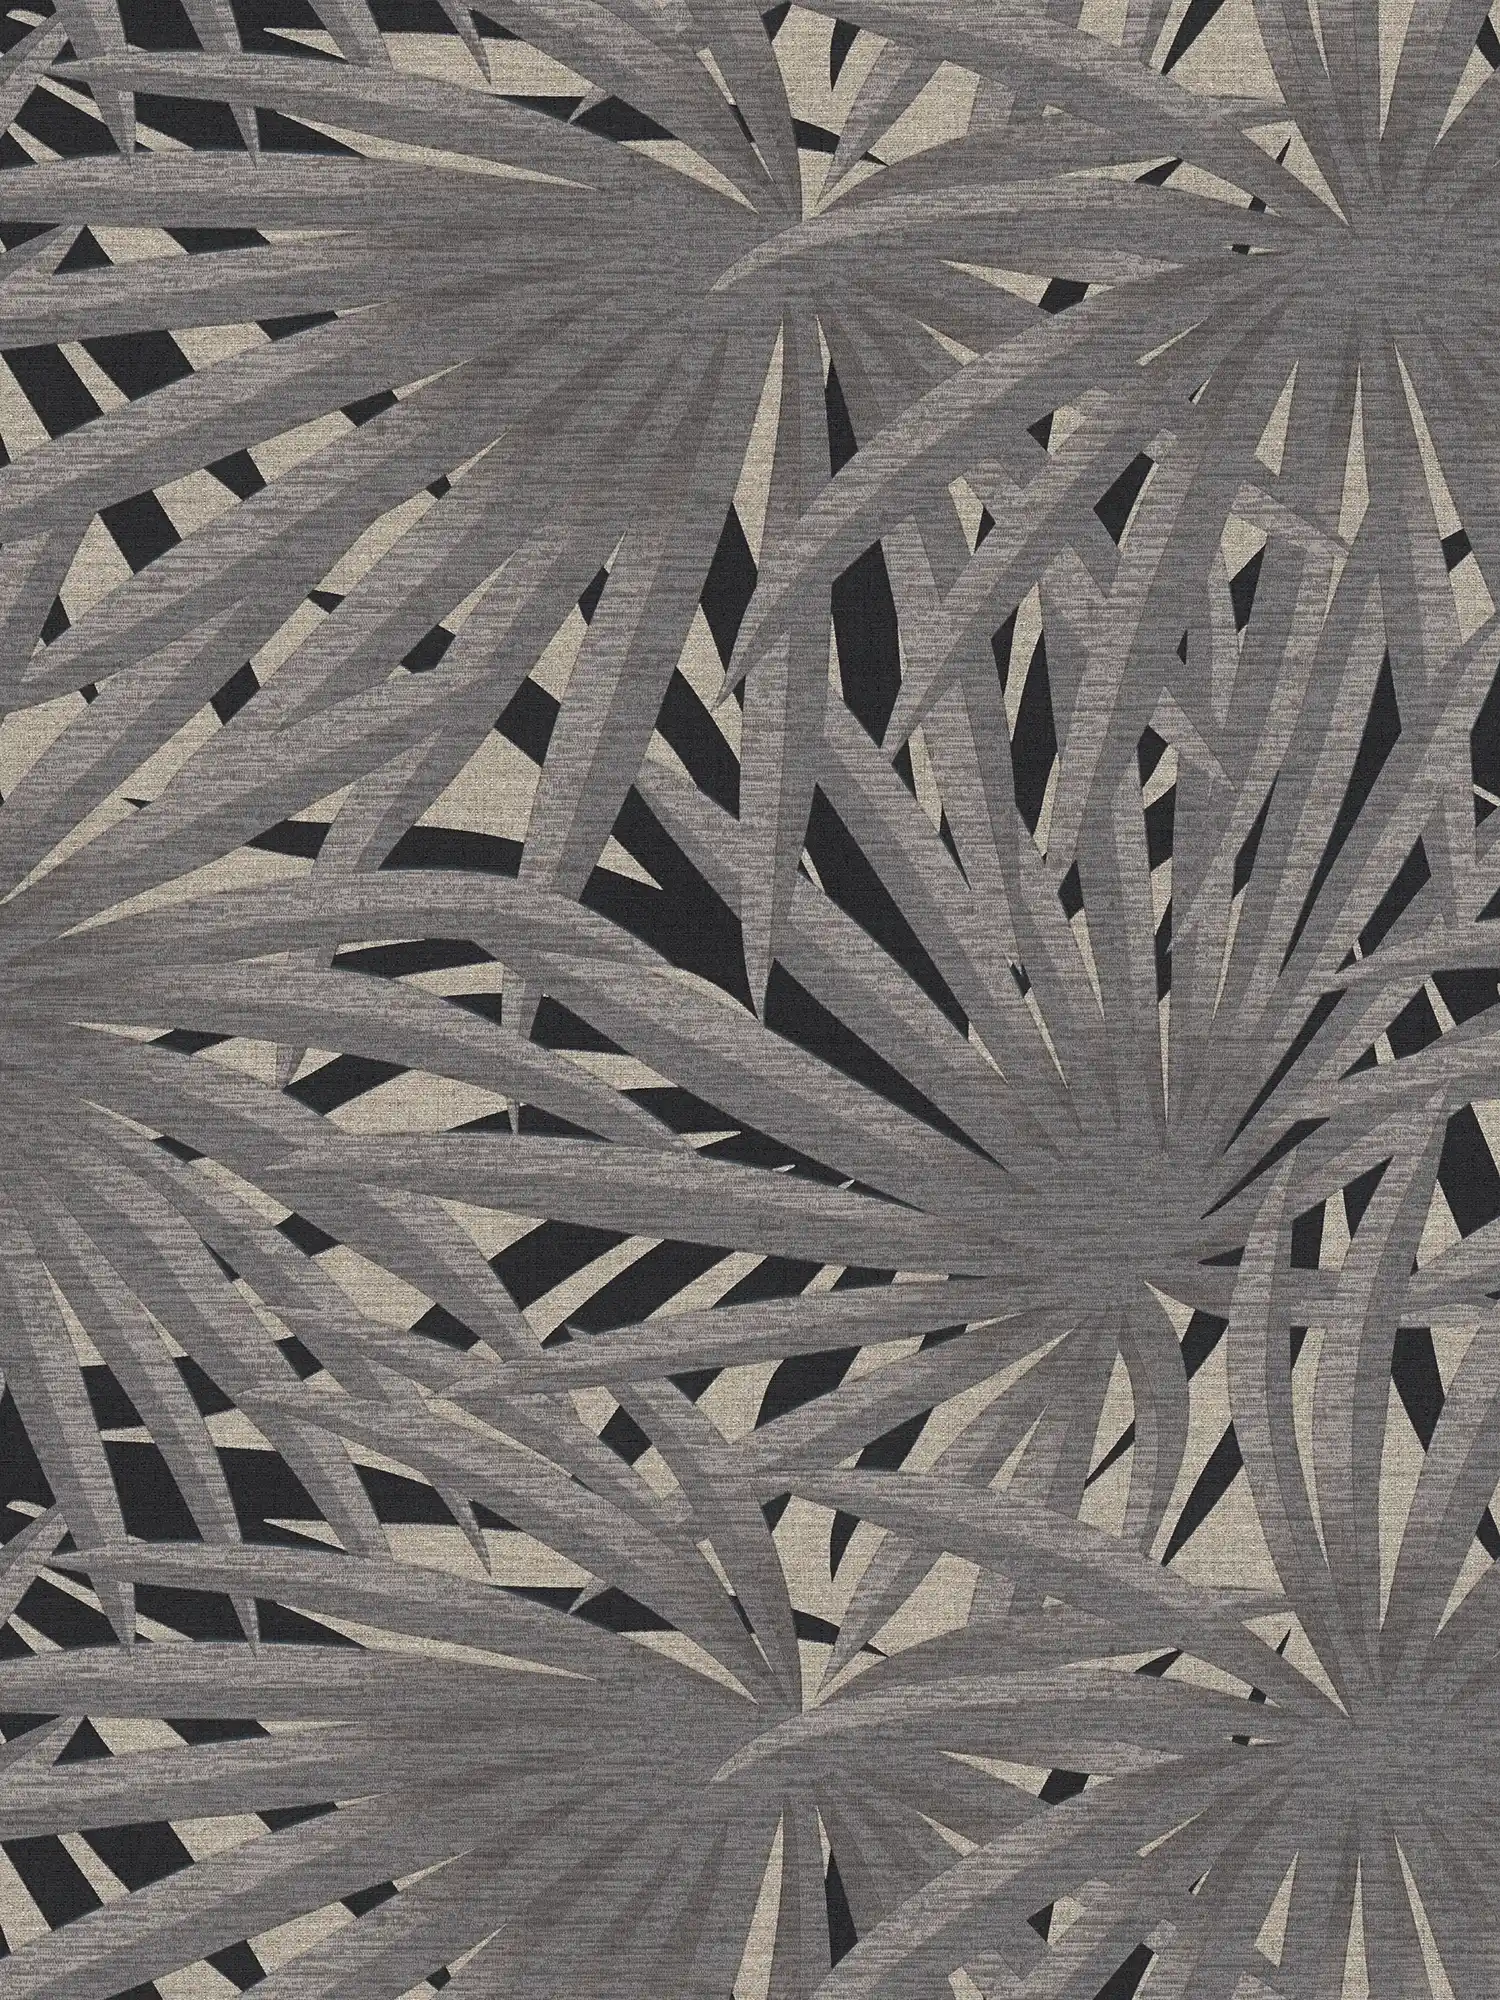 Vliesbehang jungle design met metallic effect - grijs, metallic, zwart
